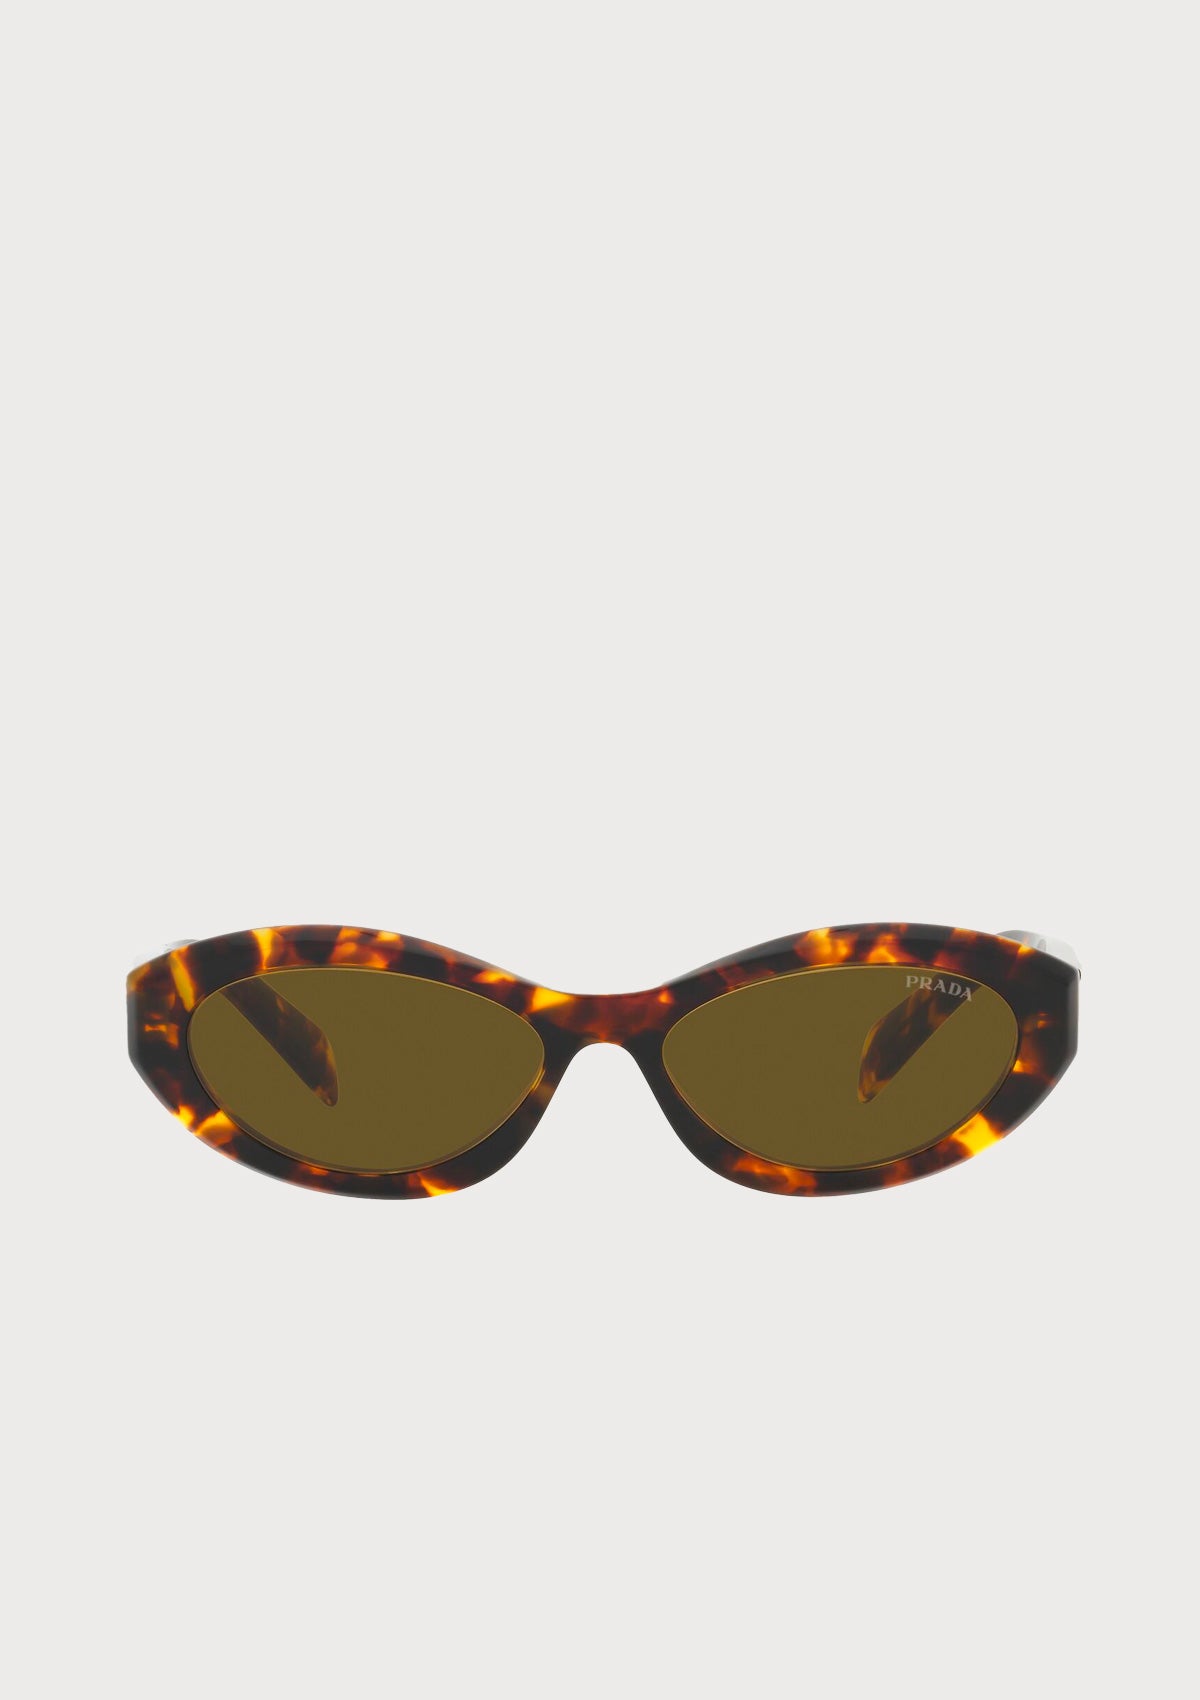 Les lunettes de ski élastique signature, Gucci